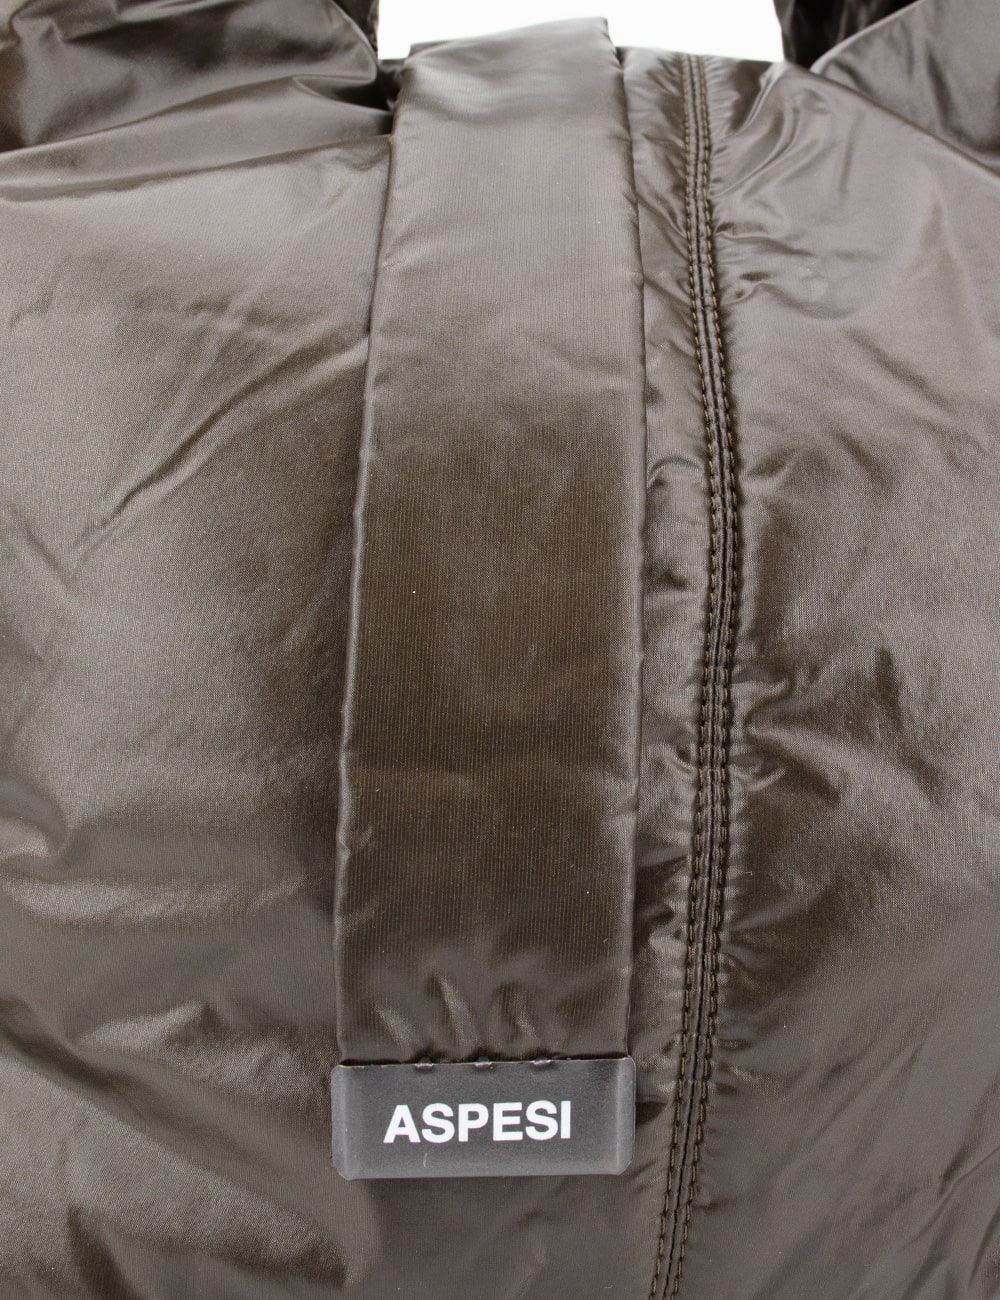 Shop Aspesi Bag In Military